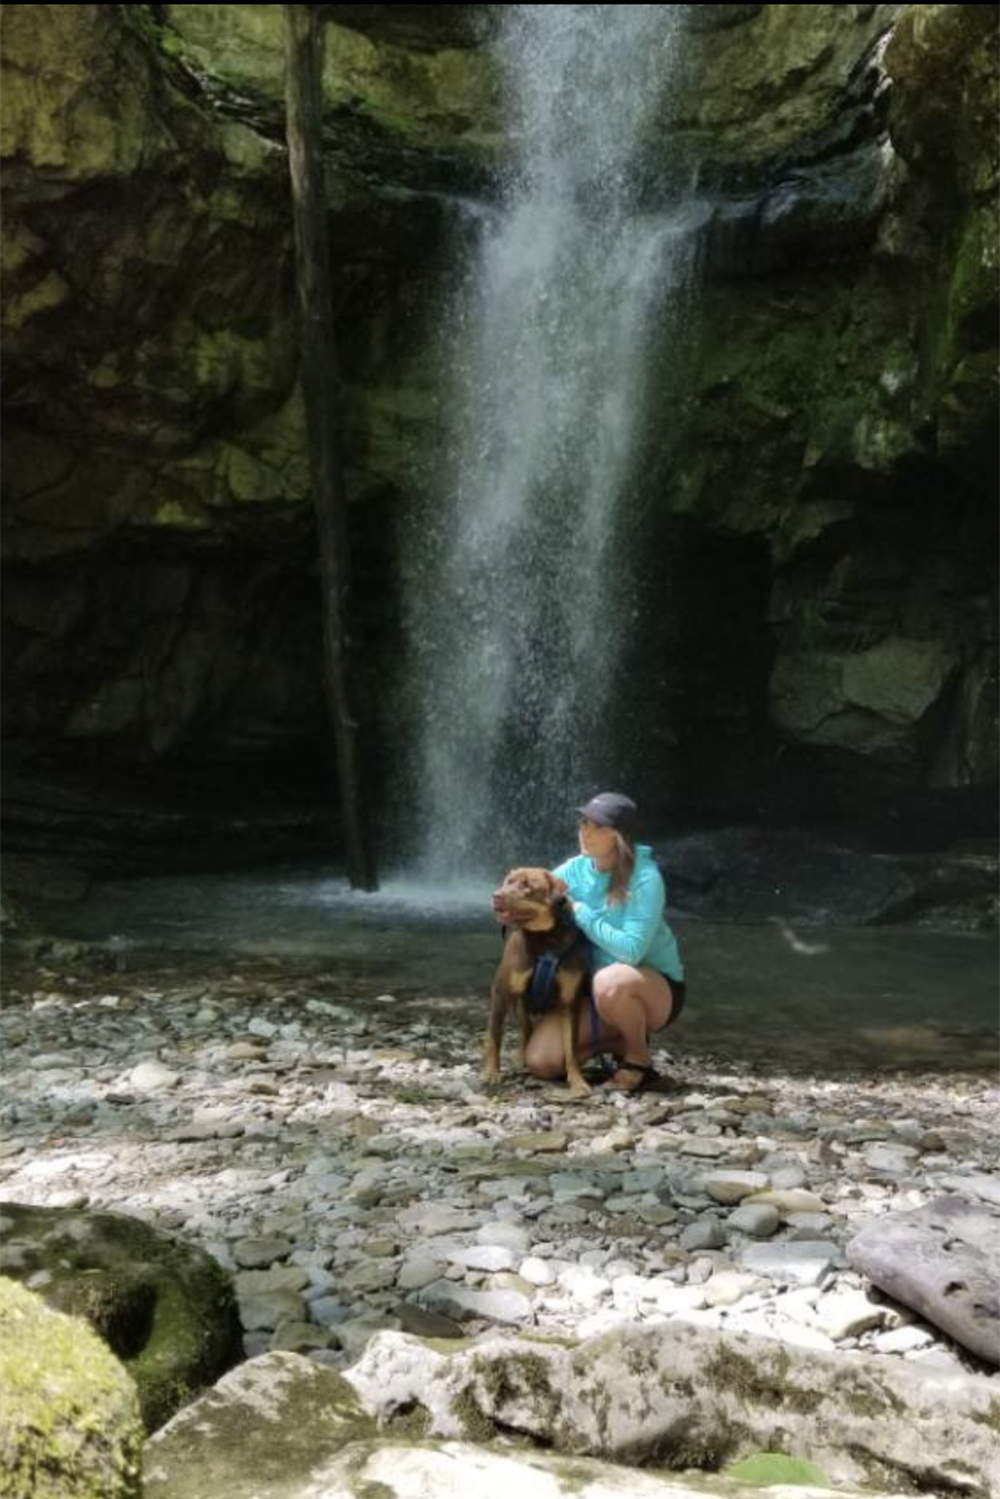 Sloane Cline enjoys a hike with her dog.